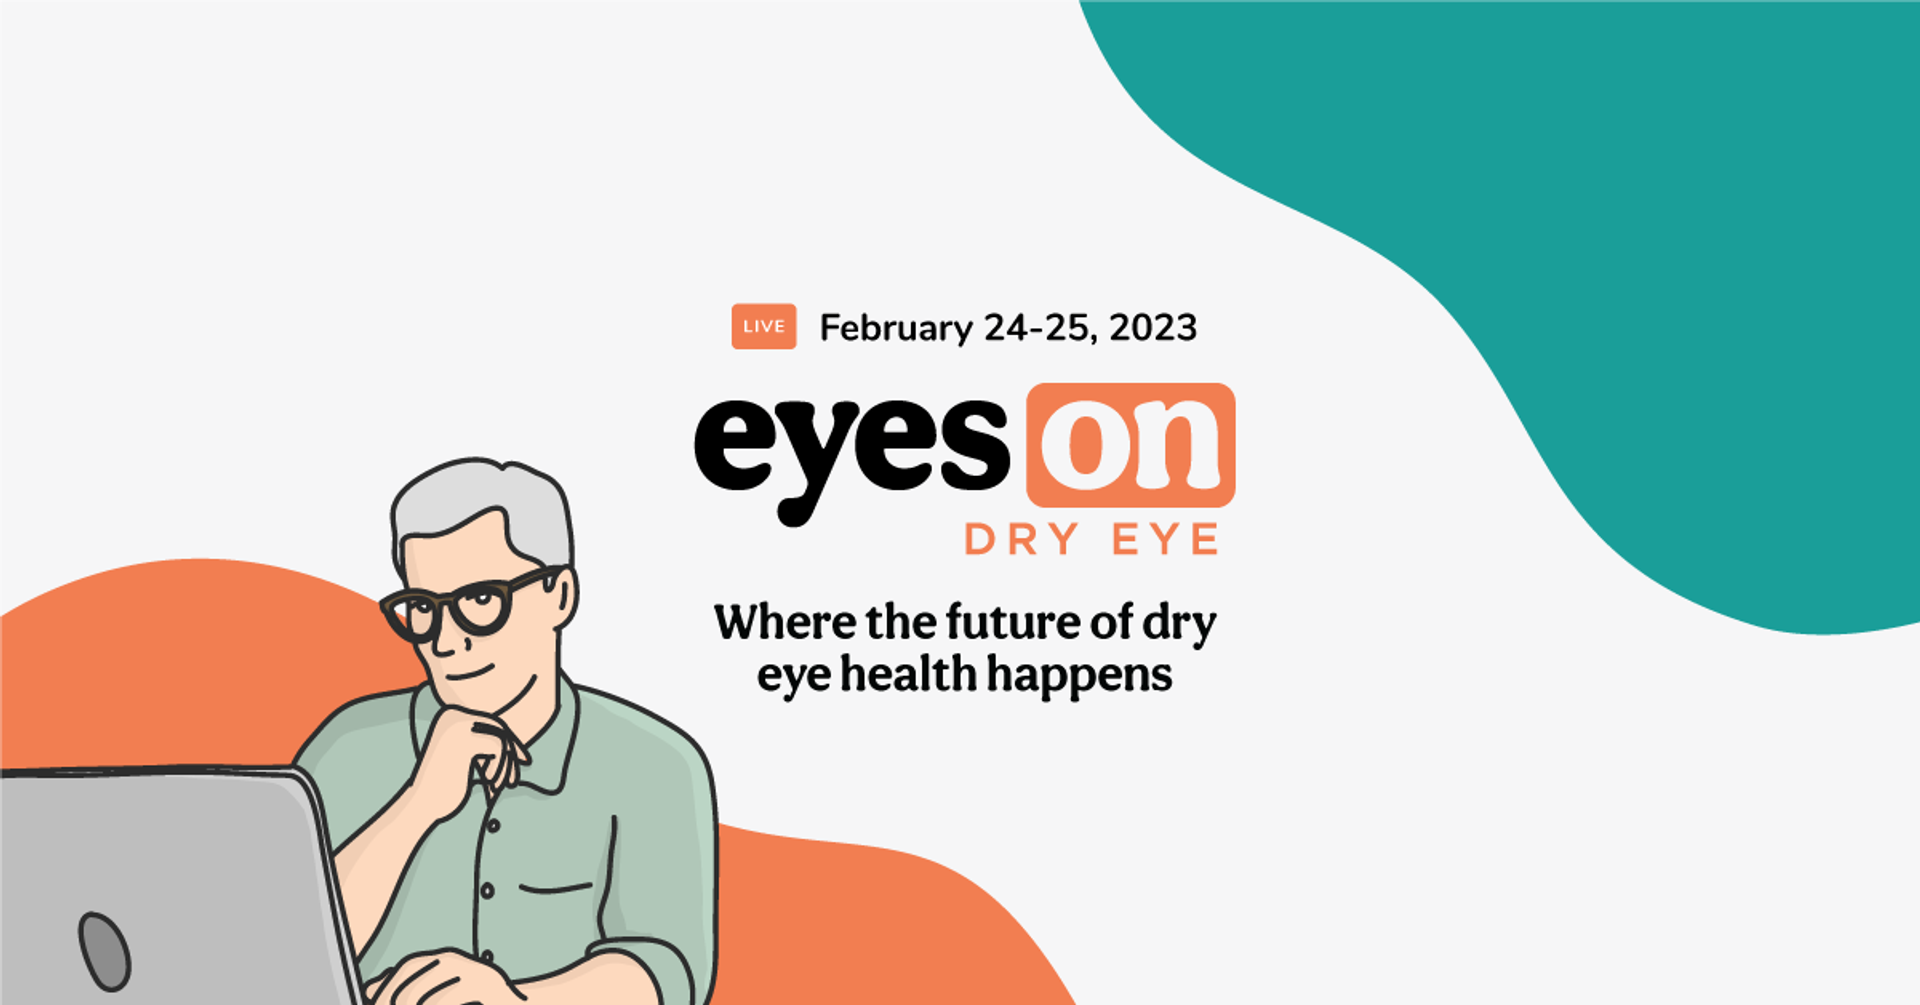 Register for Eyes On Dry Eye this February